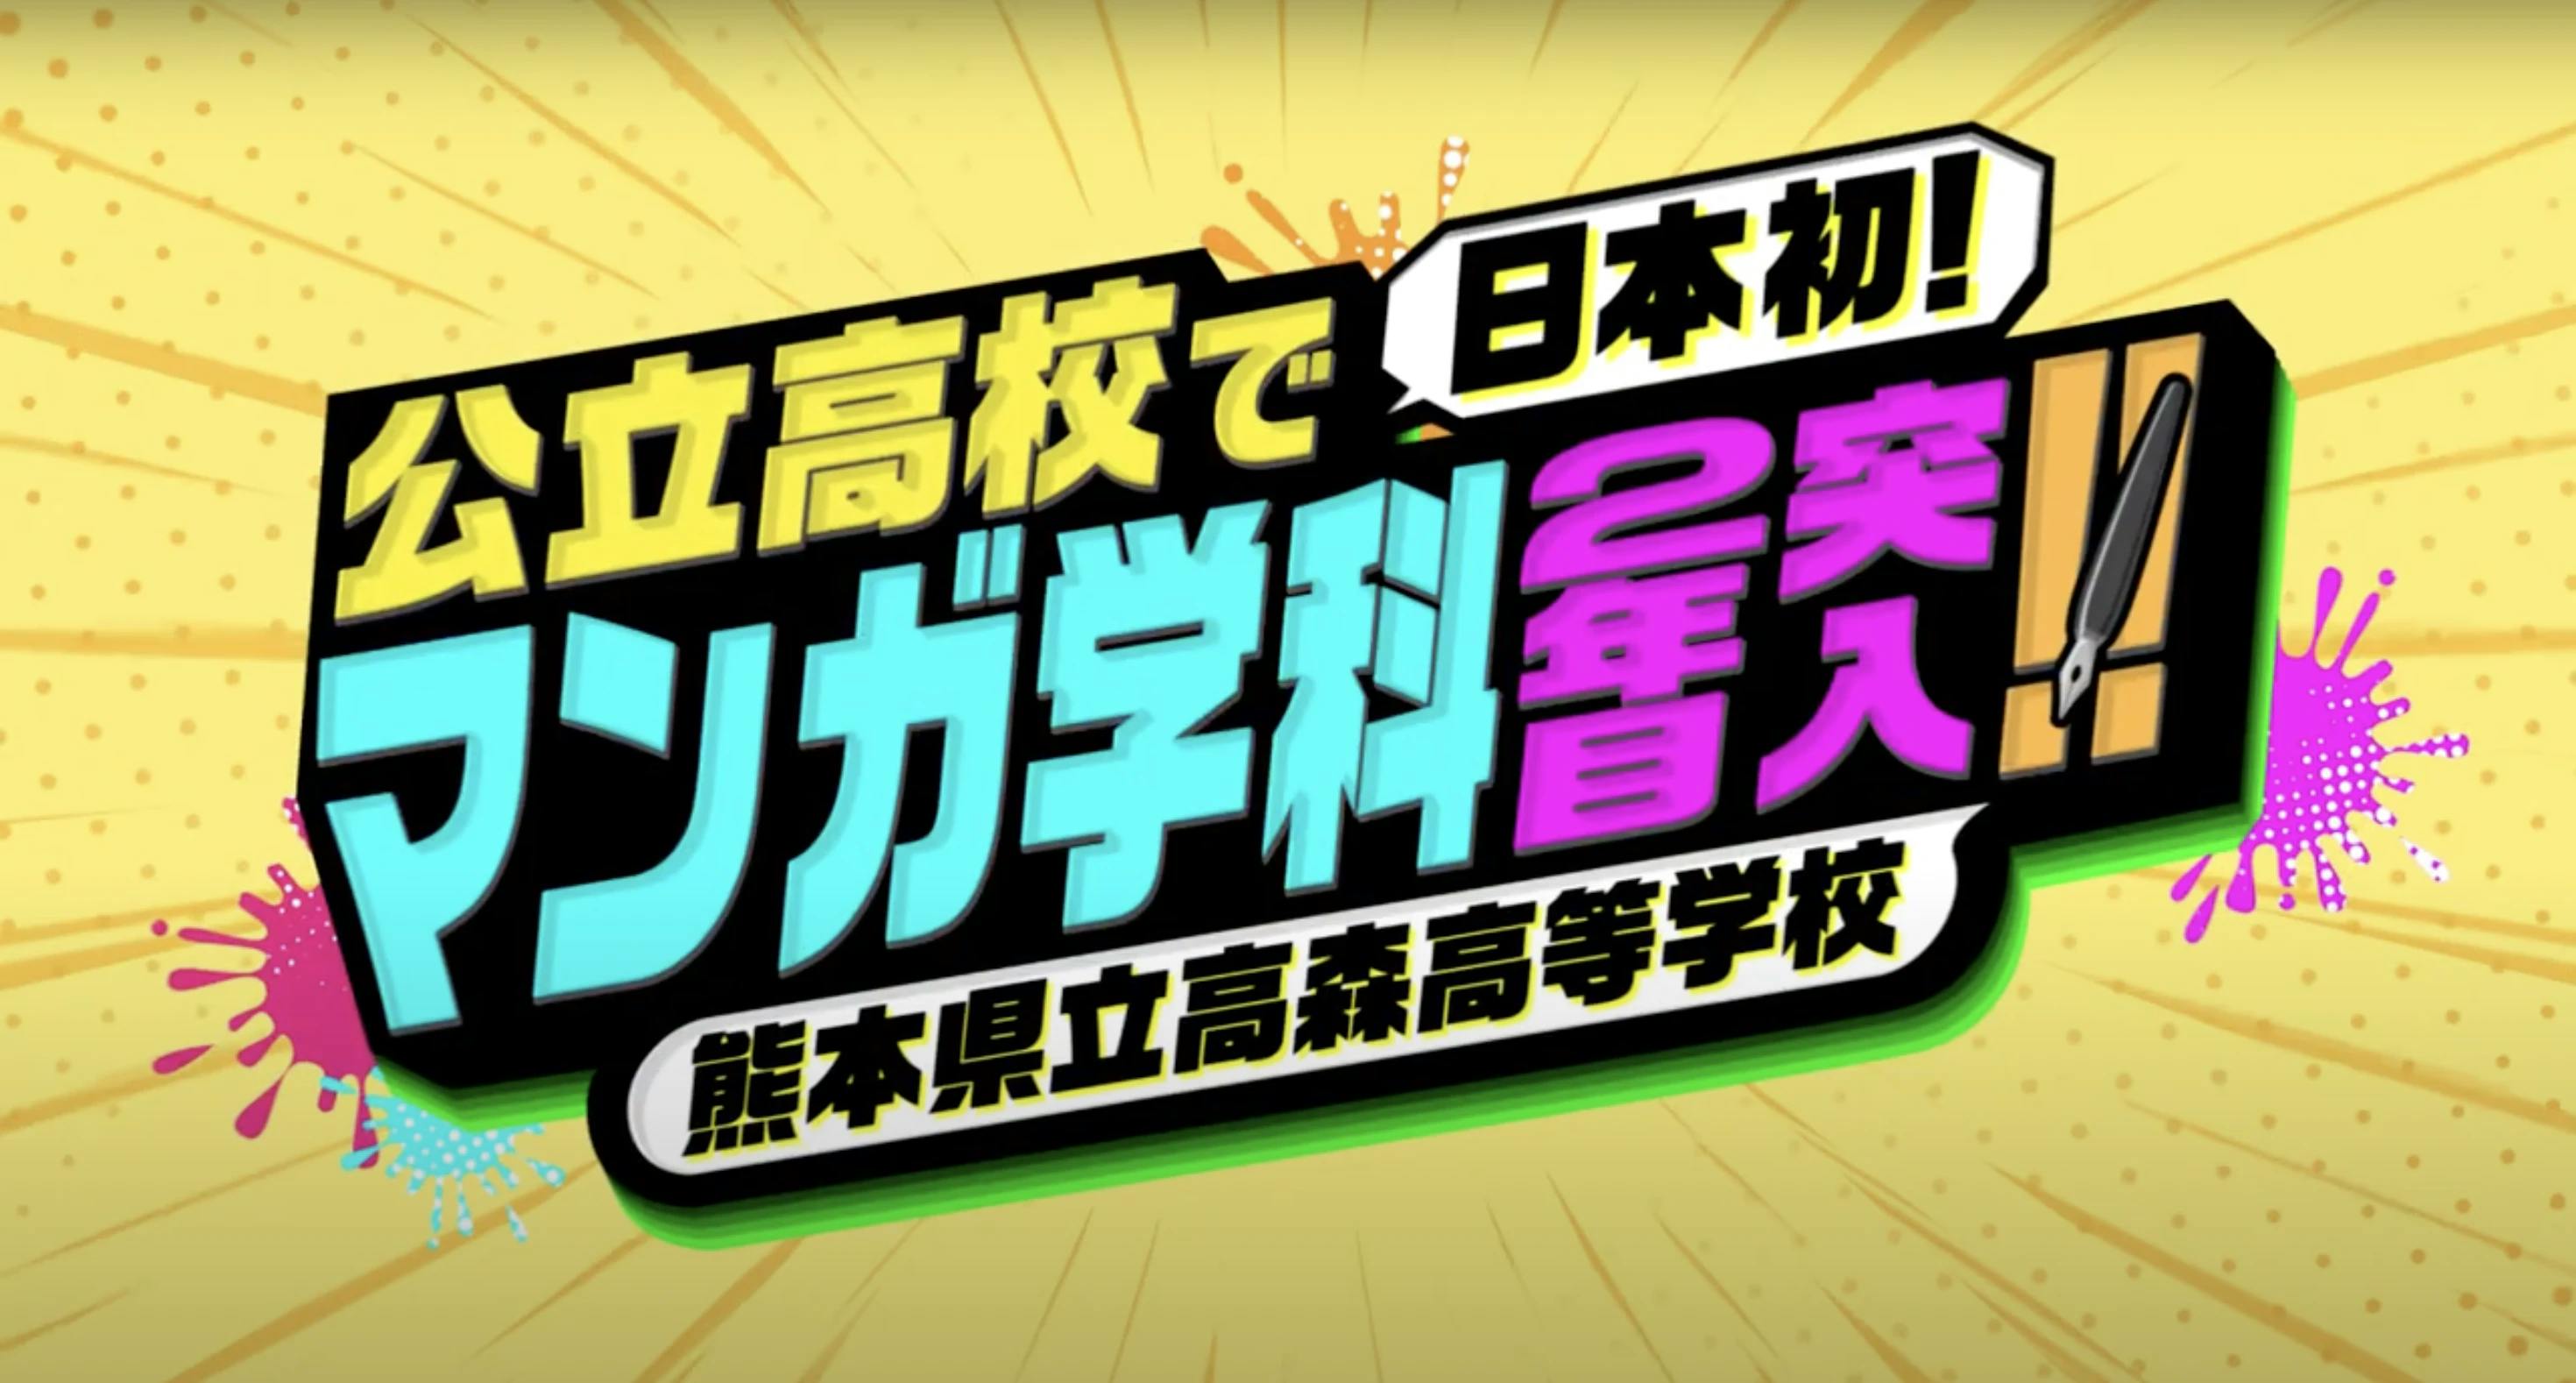 ताकामोरी हाई स्कूल मंगा विभाग के लिए एक परिचय वीडियो जारी किया गया है!